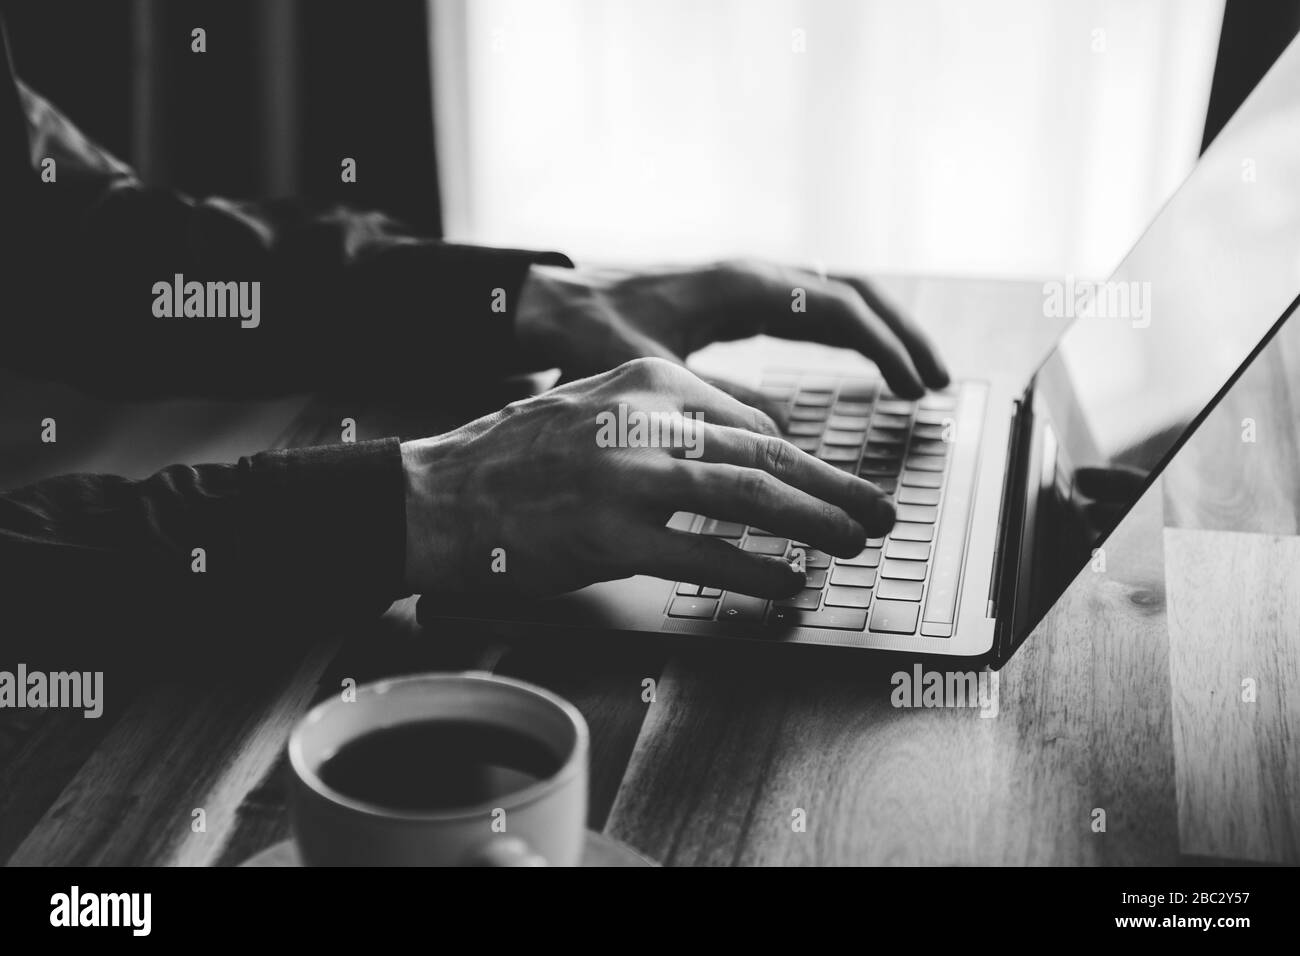 Un homme est en train de taper sur un clavier d'ordinateur portable. Concept de travail à domicile, photo en noir et blanc. Banque D'Images